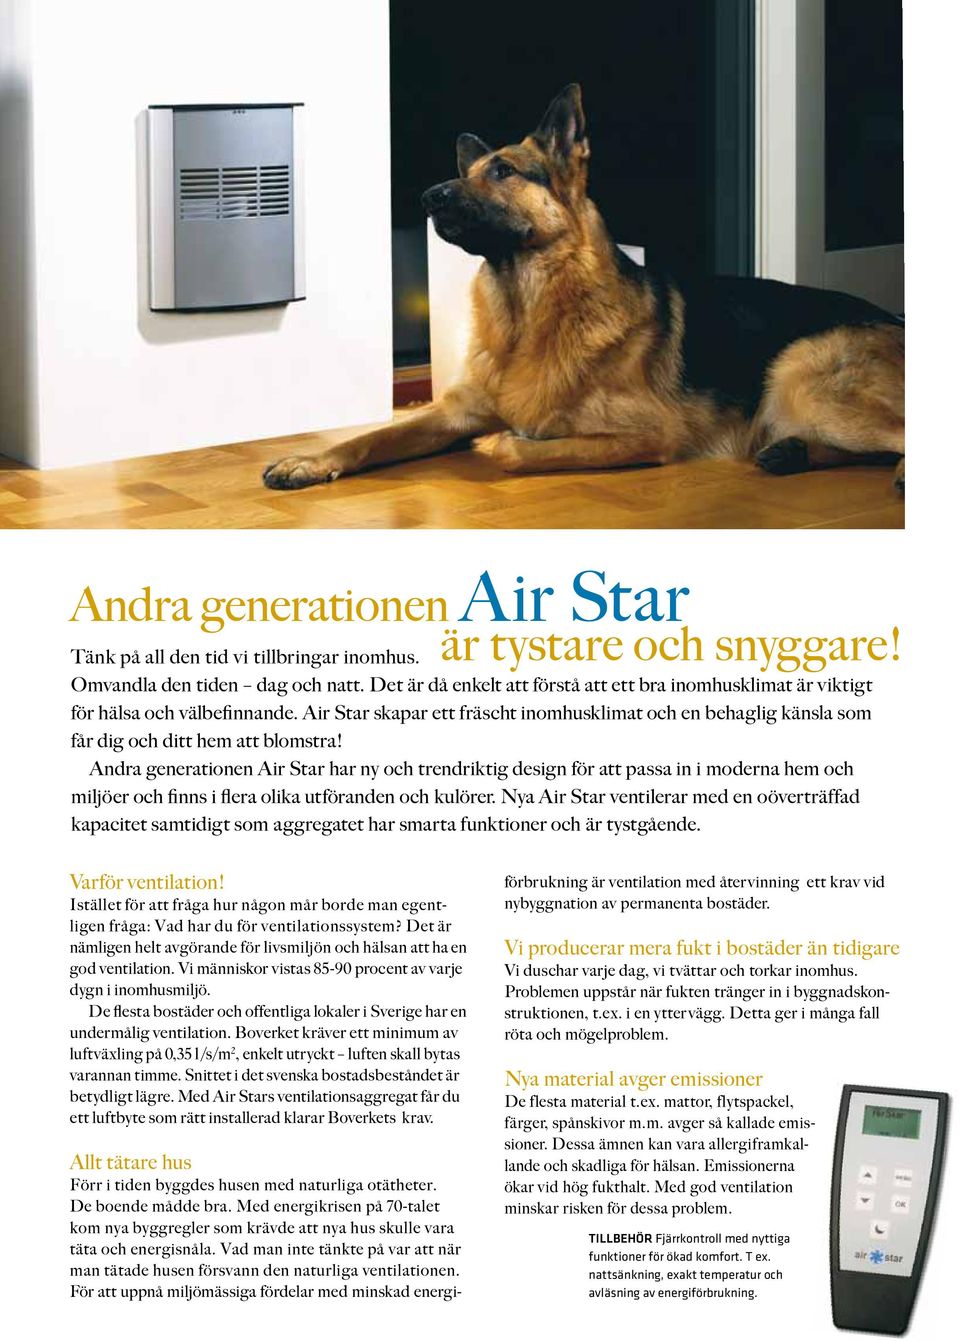 Andra generationen Air Star har ny och trendriktig design för att passa in i moderna hem och miljöer och finns i flera olika utföranden och kulörer.